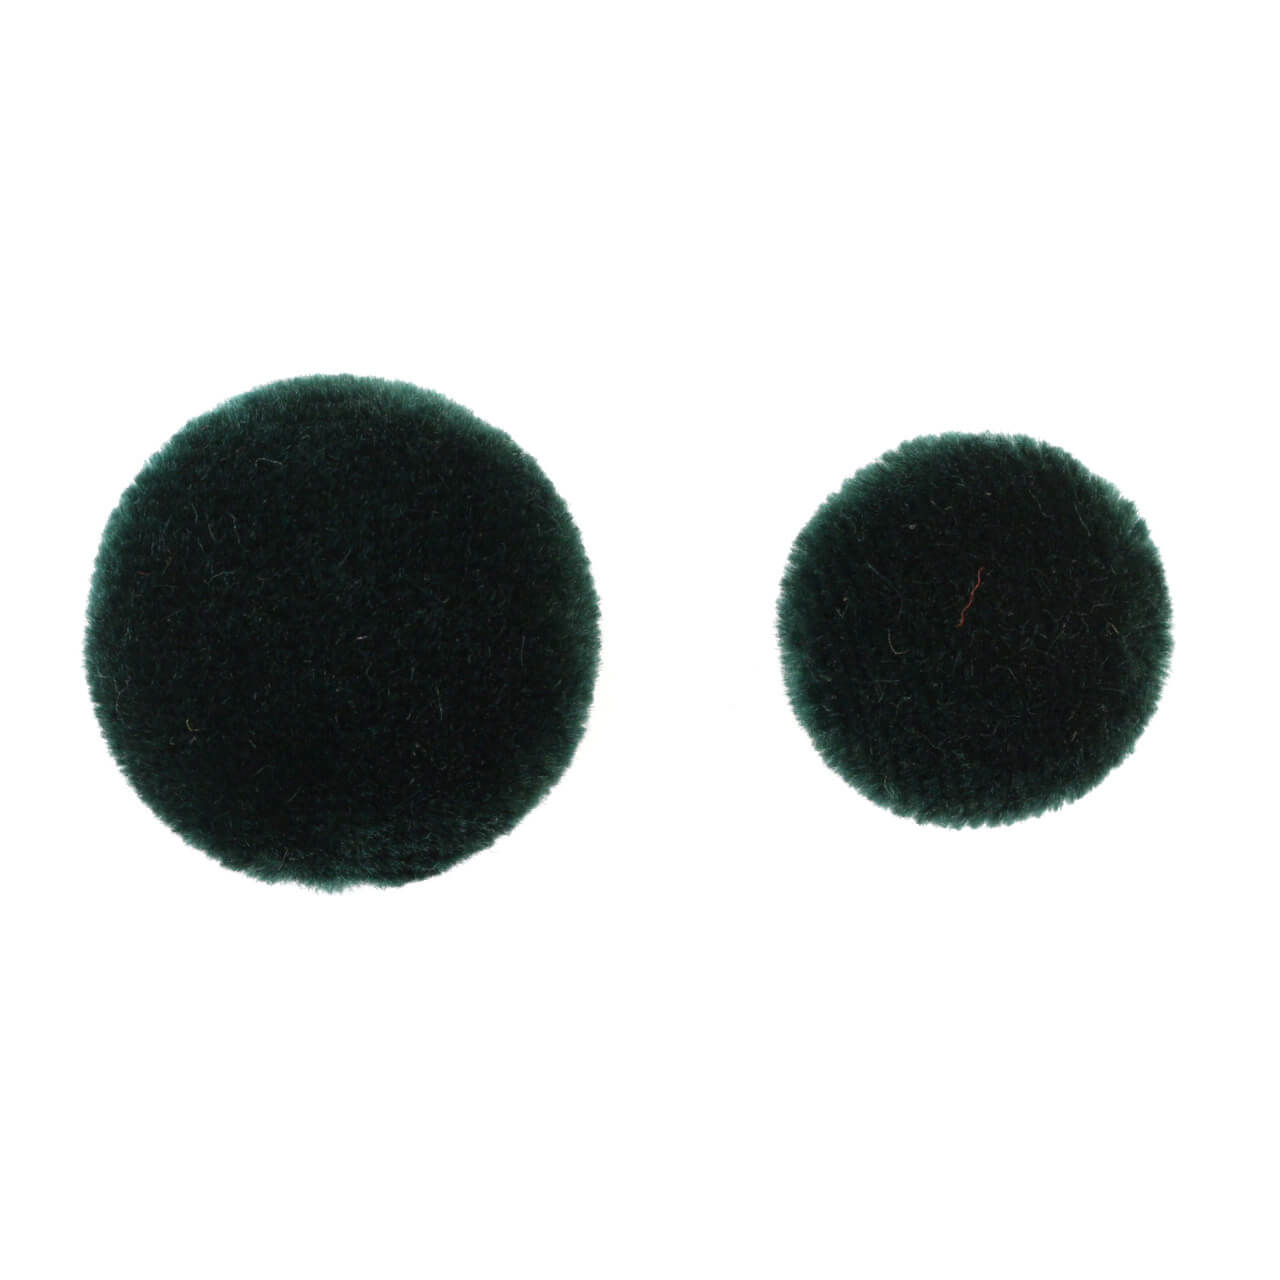 Пуговицы  Ø1,8 см, цвет Зеленый, фото 1